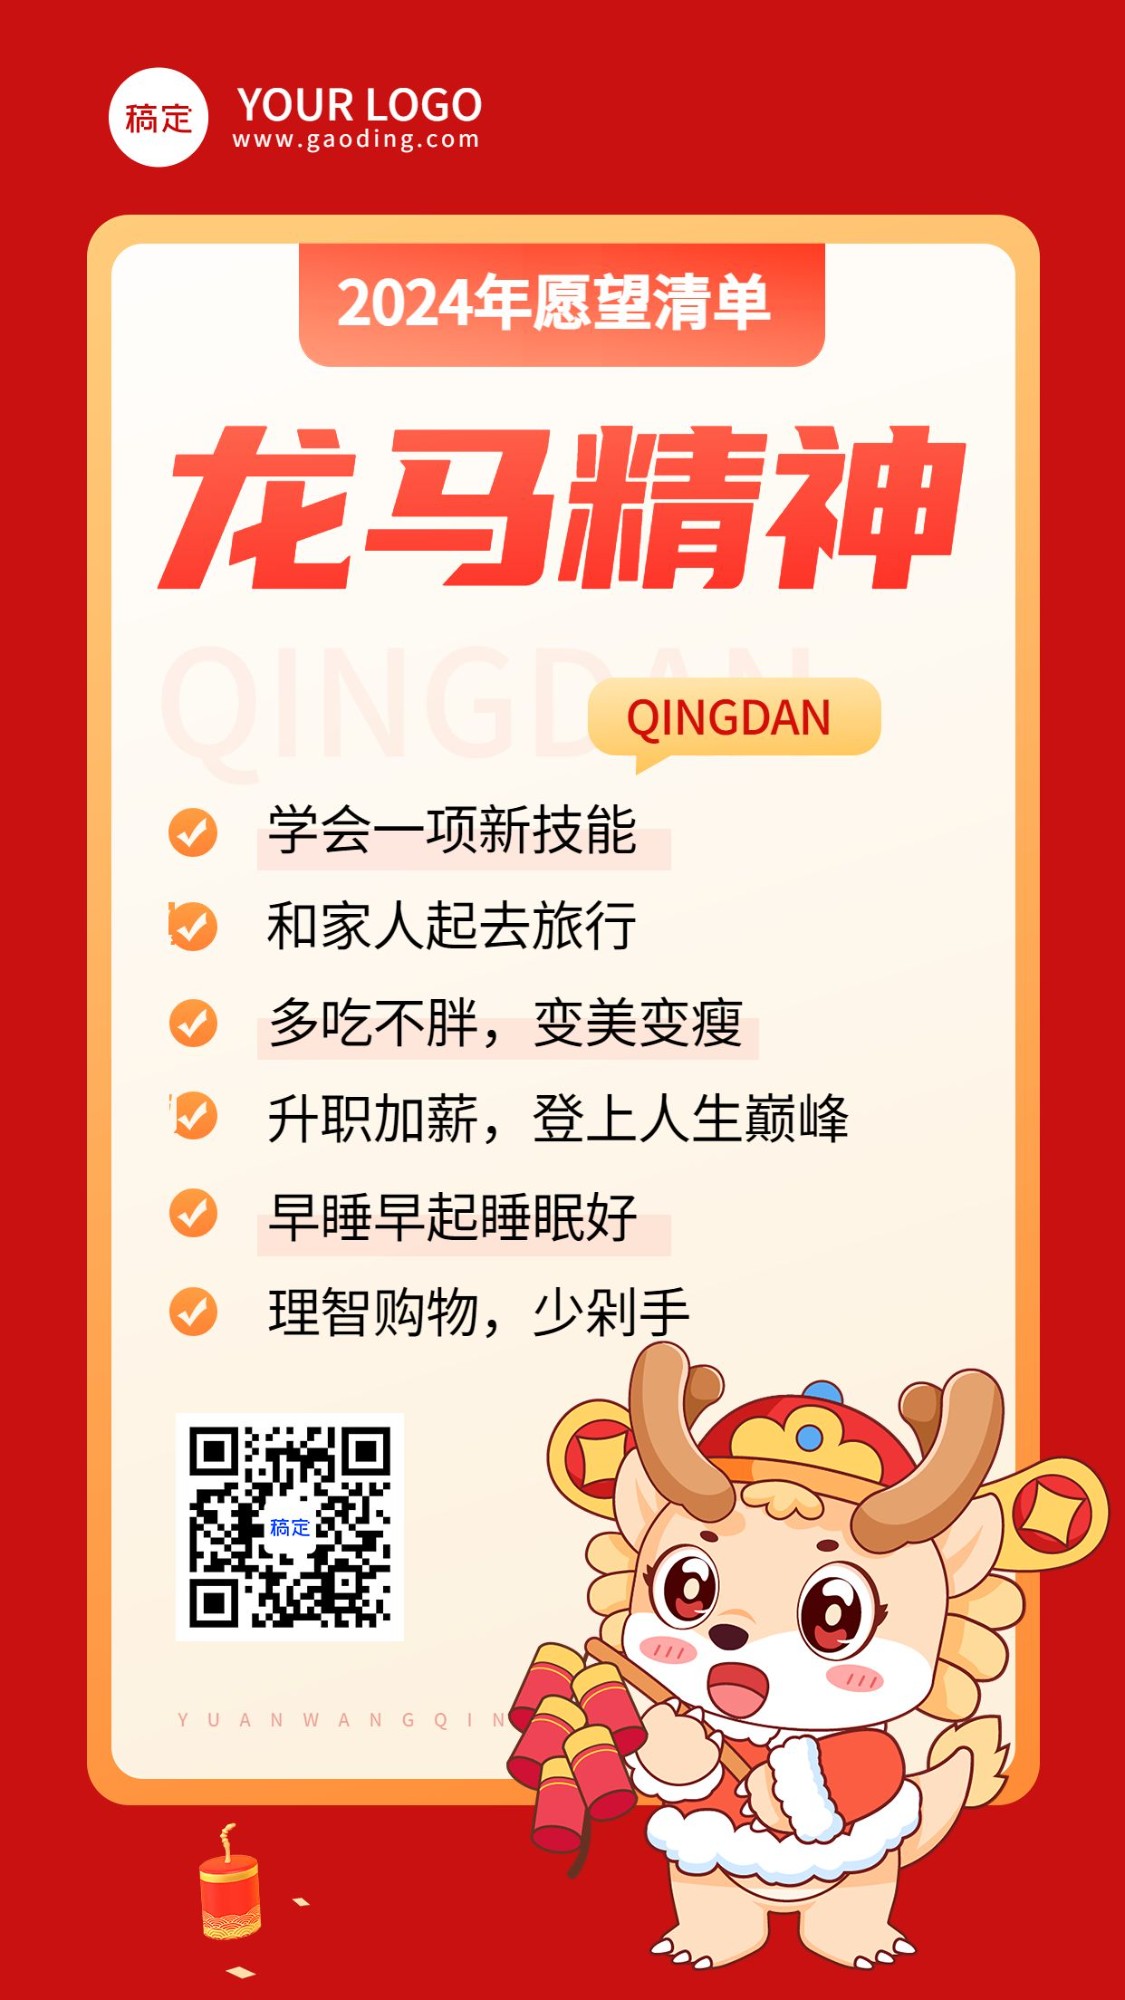 春节新年愿望清单手机海报